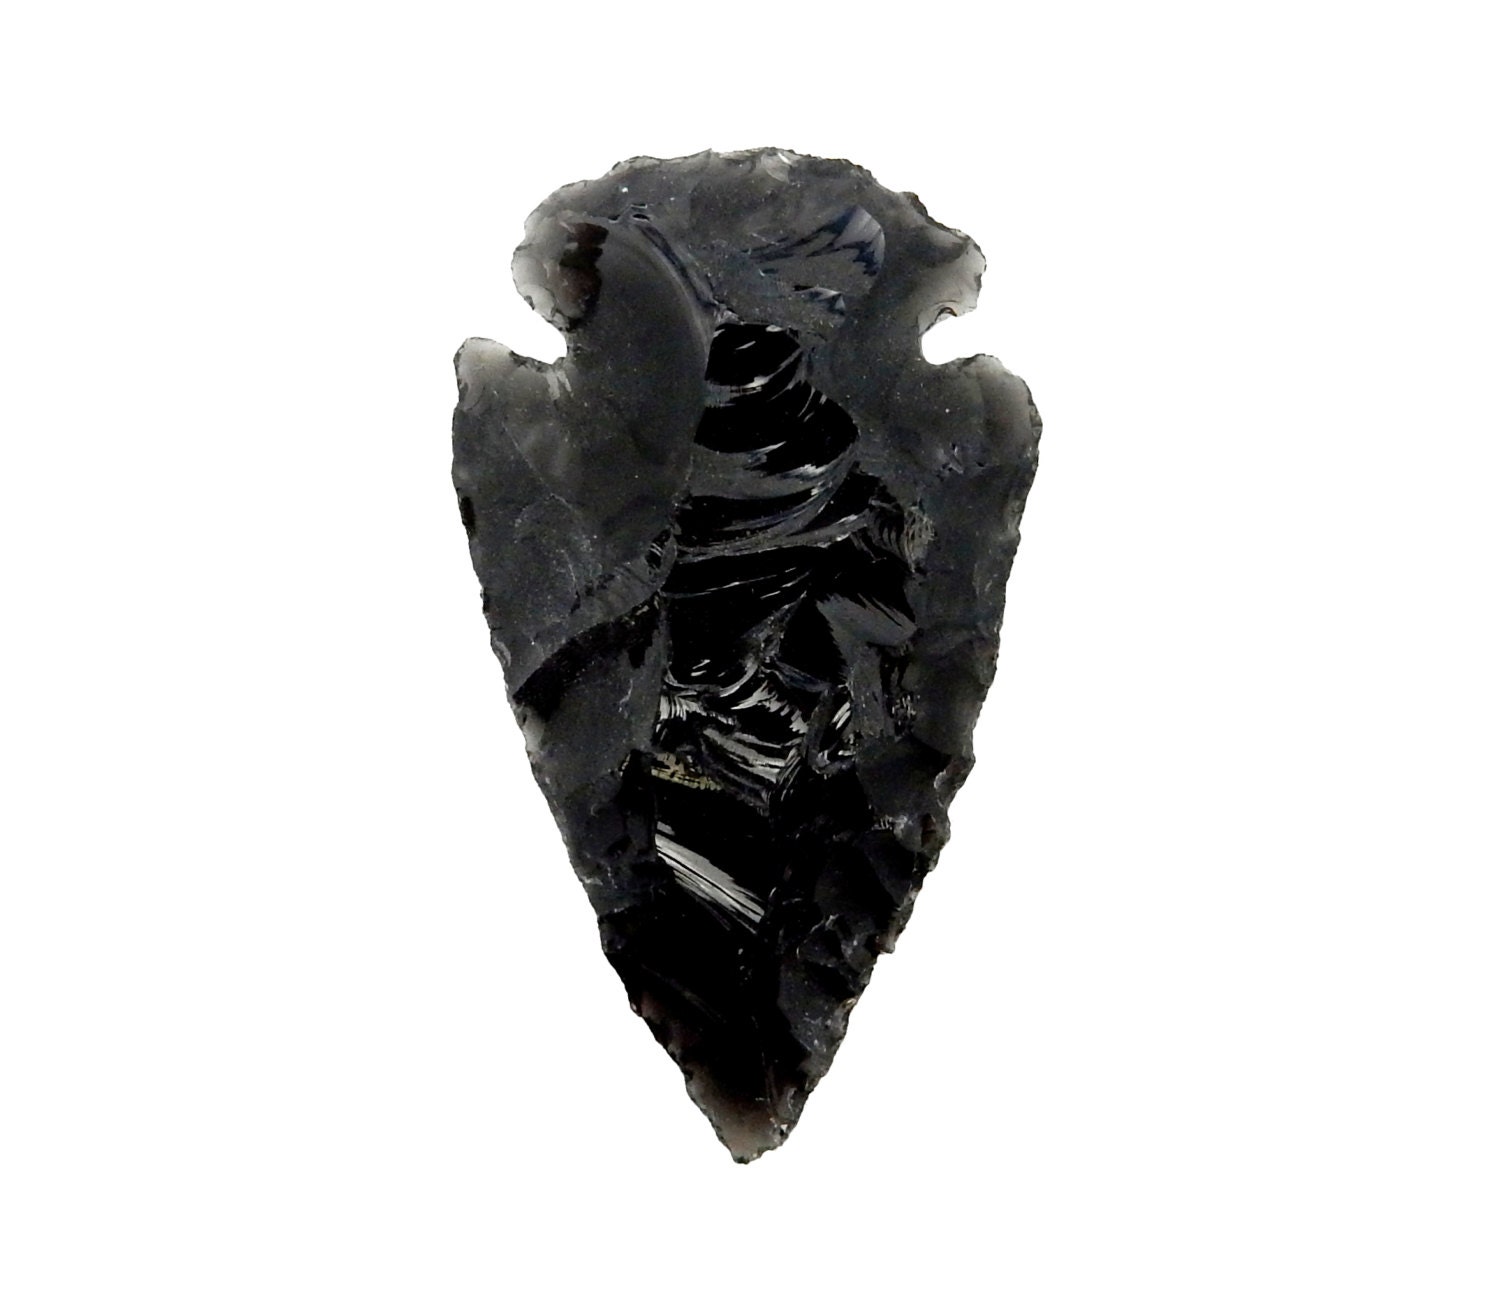 1 Hand Made Black Obsidian Crystal Arrowhead 2 1/4  2 3/4 Inches Long Arrowheads 